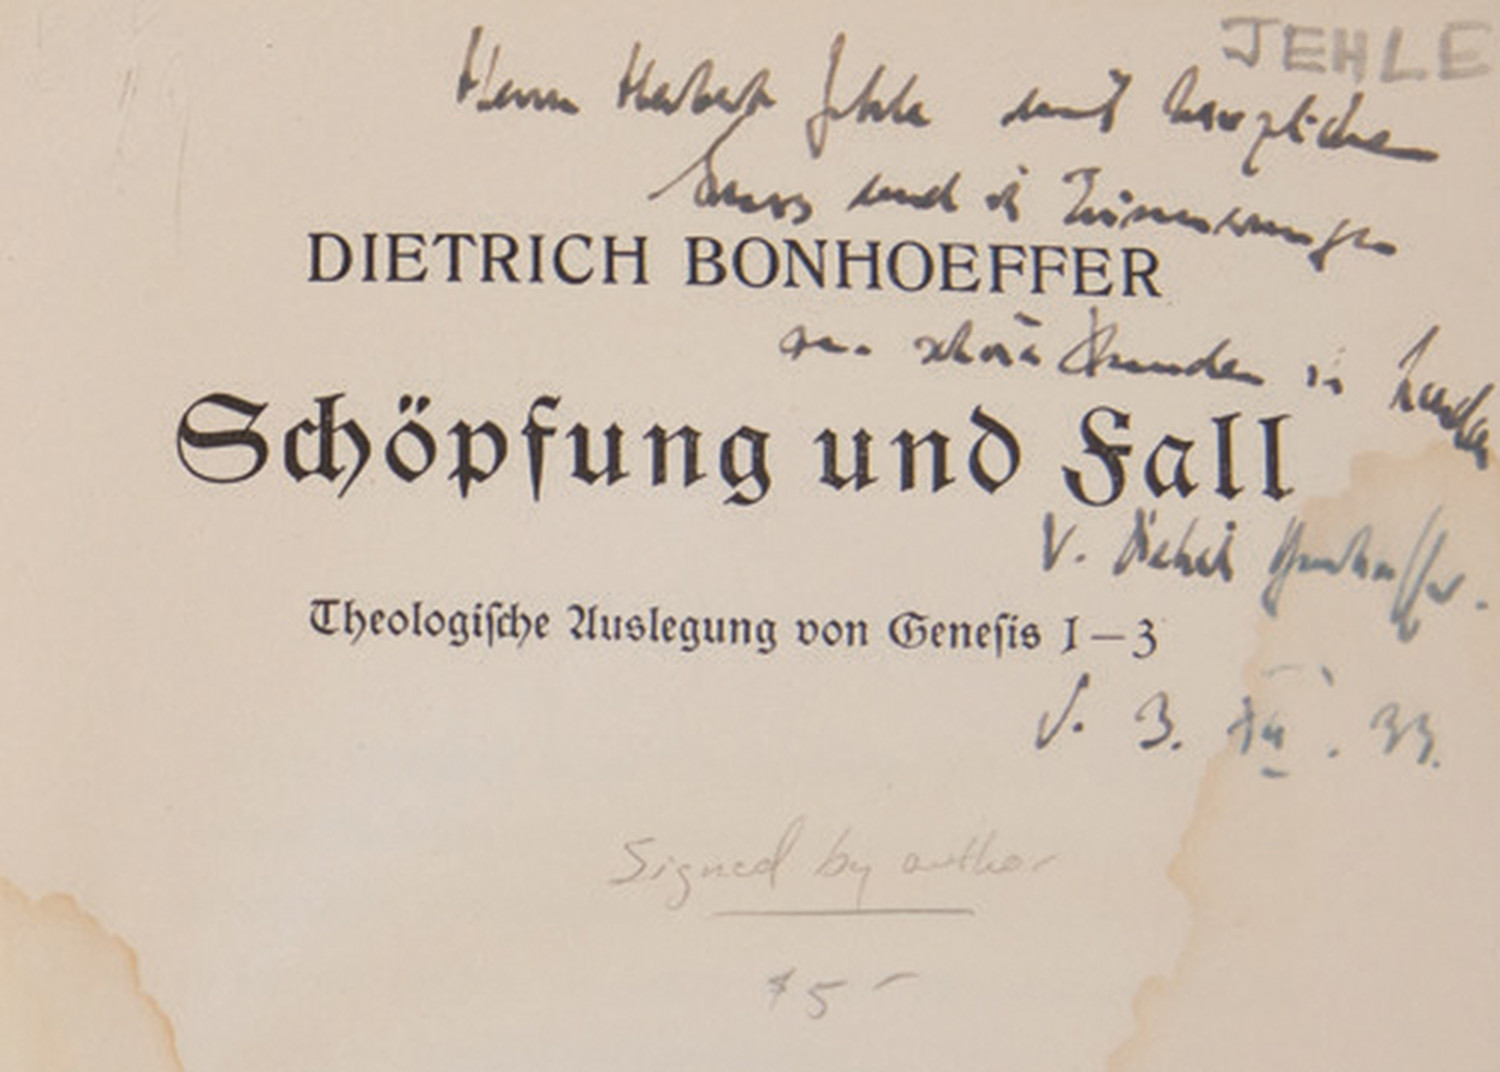 Archive Moment: Schöpfung Und Fall: Theologische Auslegung Von Genesis 1-3, by Dietrich Bonhoeffer